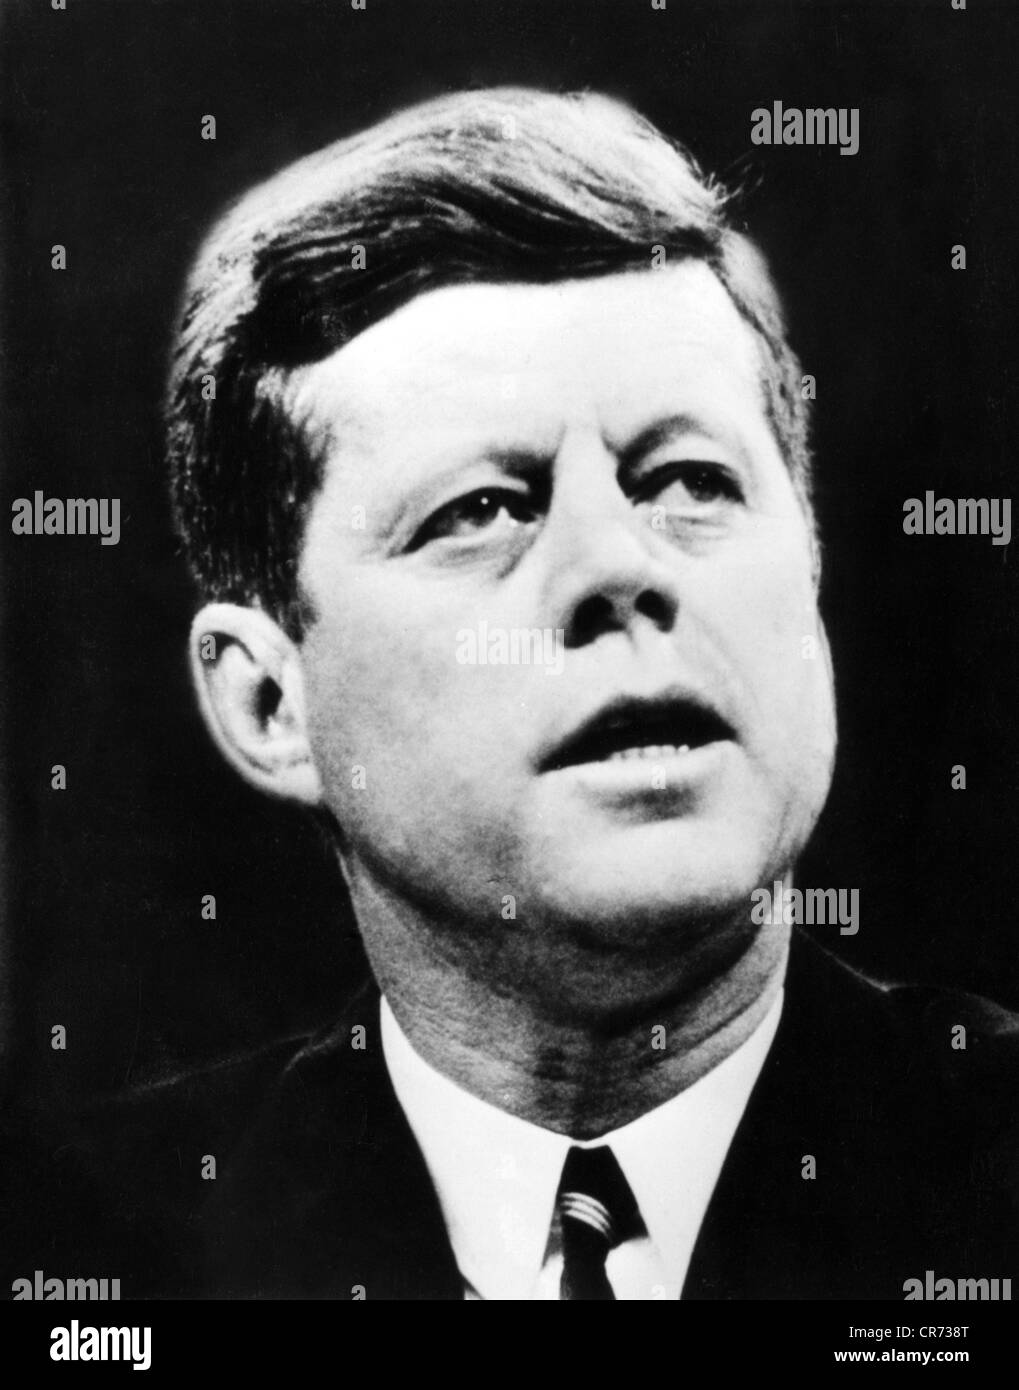 Kennedy, John Fitzgerald, 29.5.1917 - 22.11.1963, politicien américain (Dem.), président des États-Unis 20.1.1961 - 22.11.1963, portrait, début des années 1960, Banque D'Images